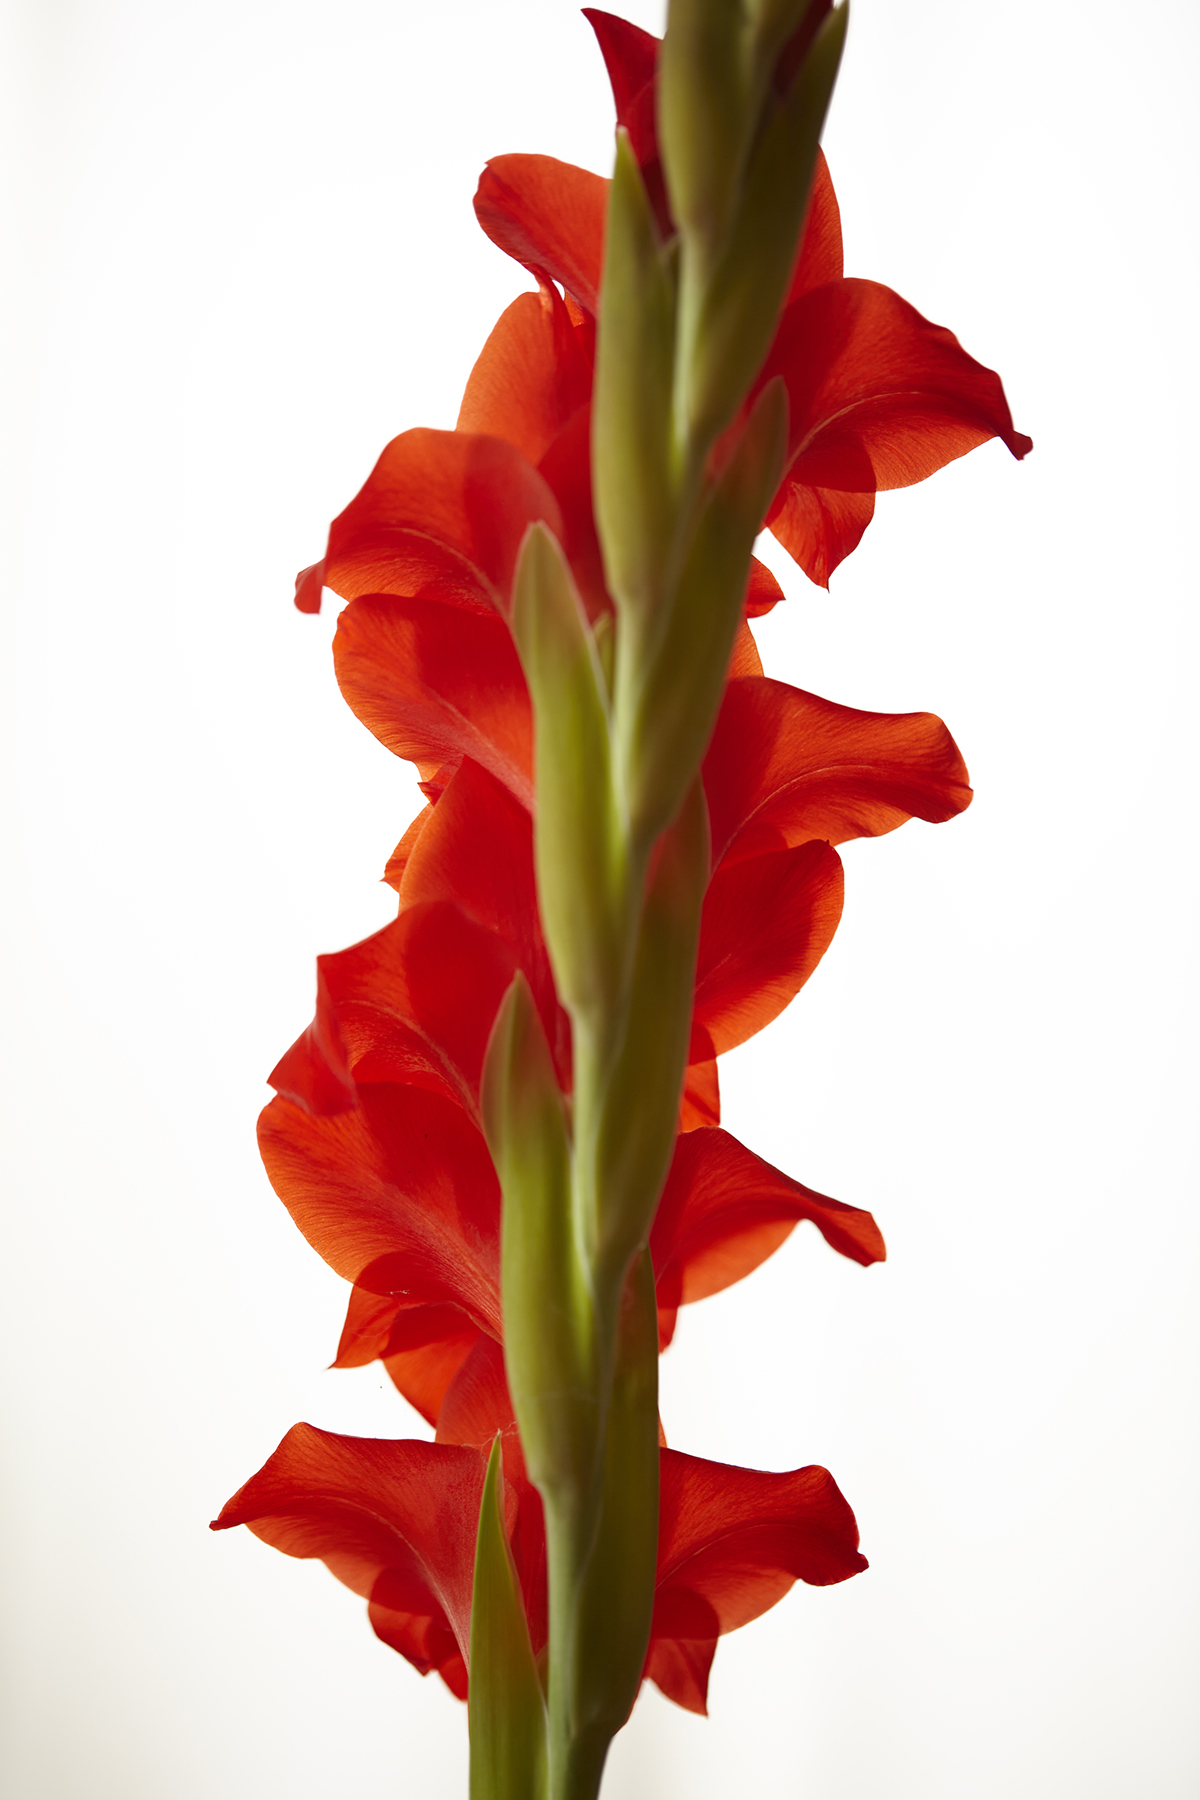 Kevin Black: Red Gladiola, Color